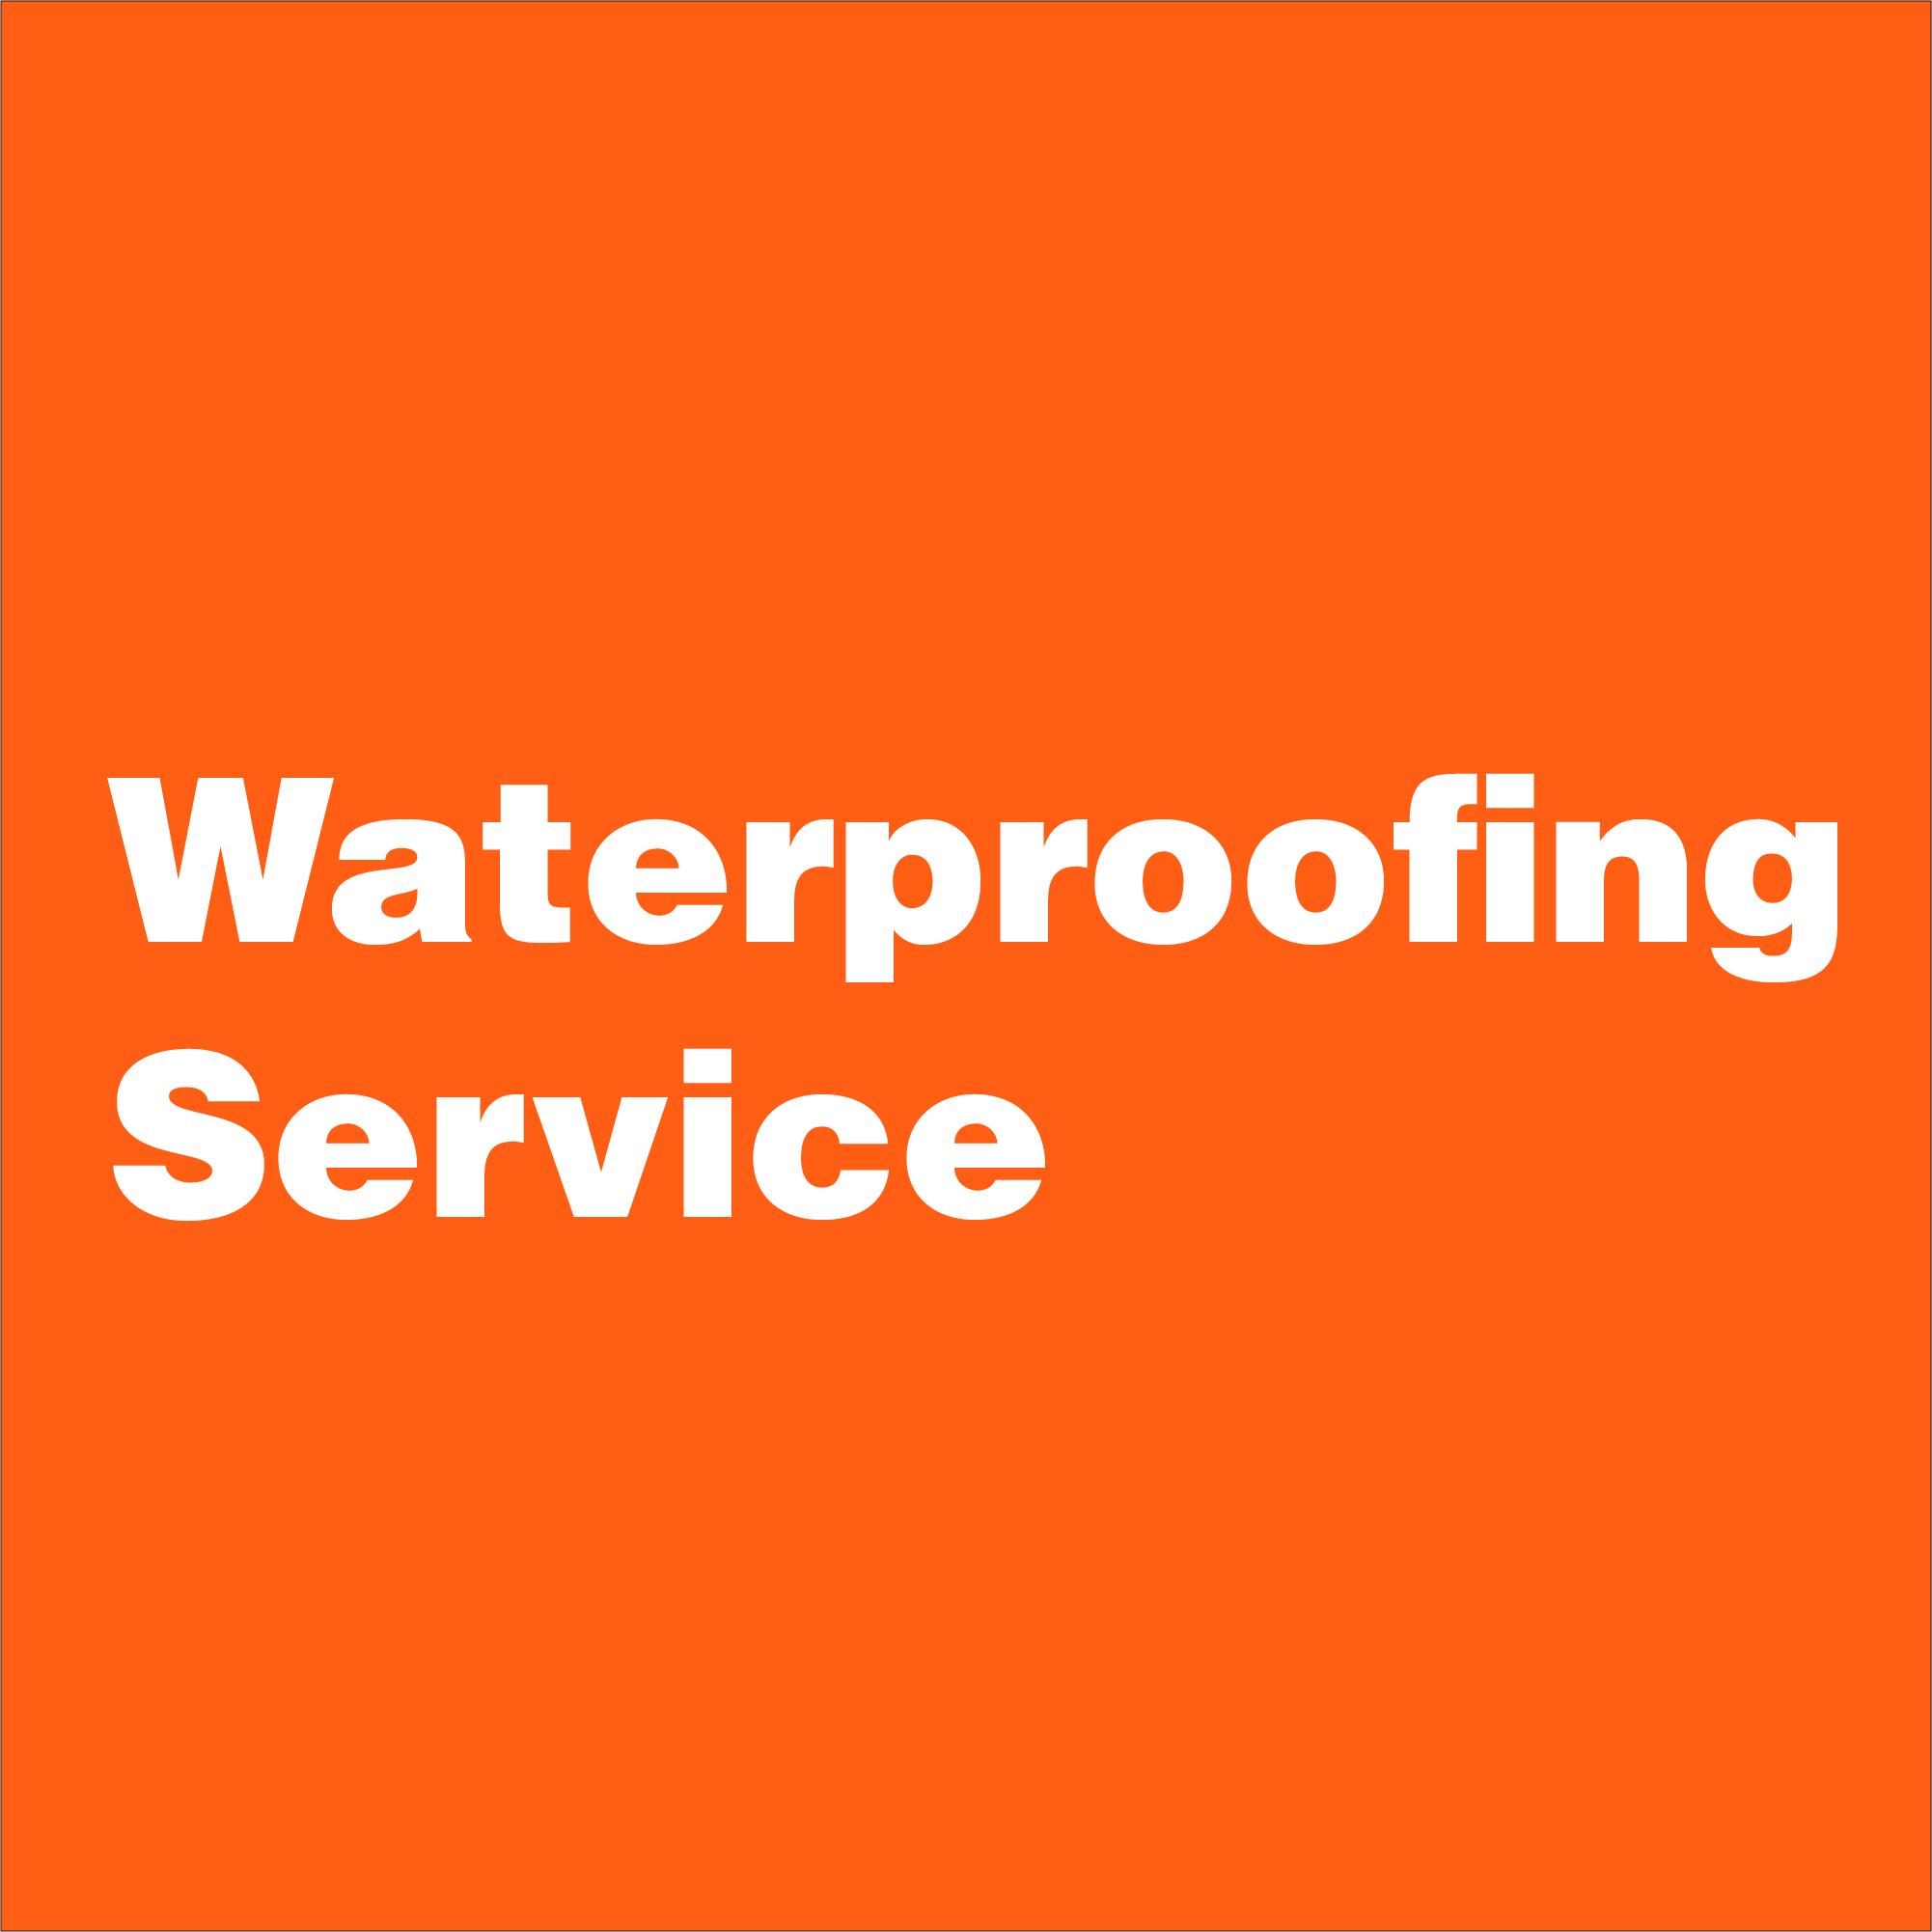 Waterproofing2 image